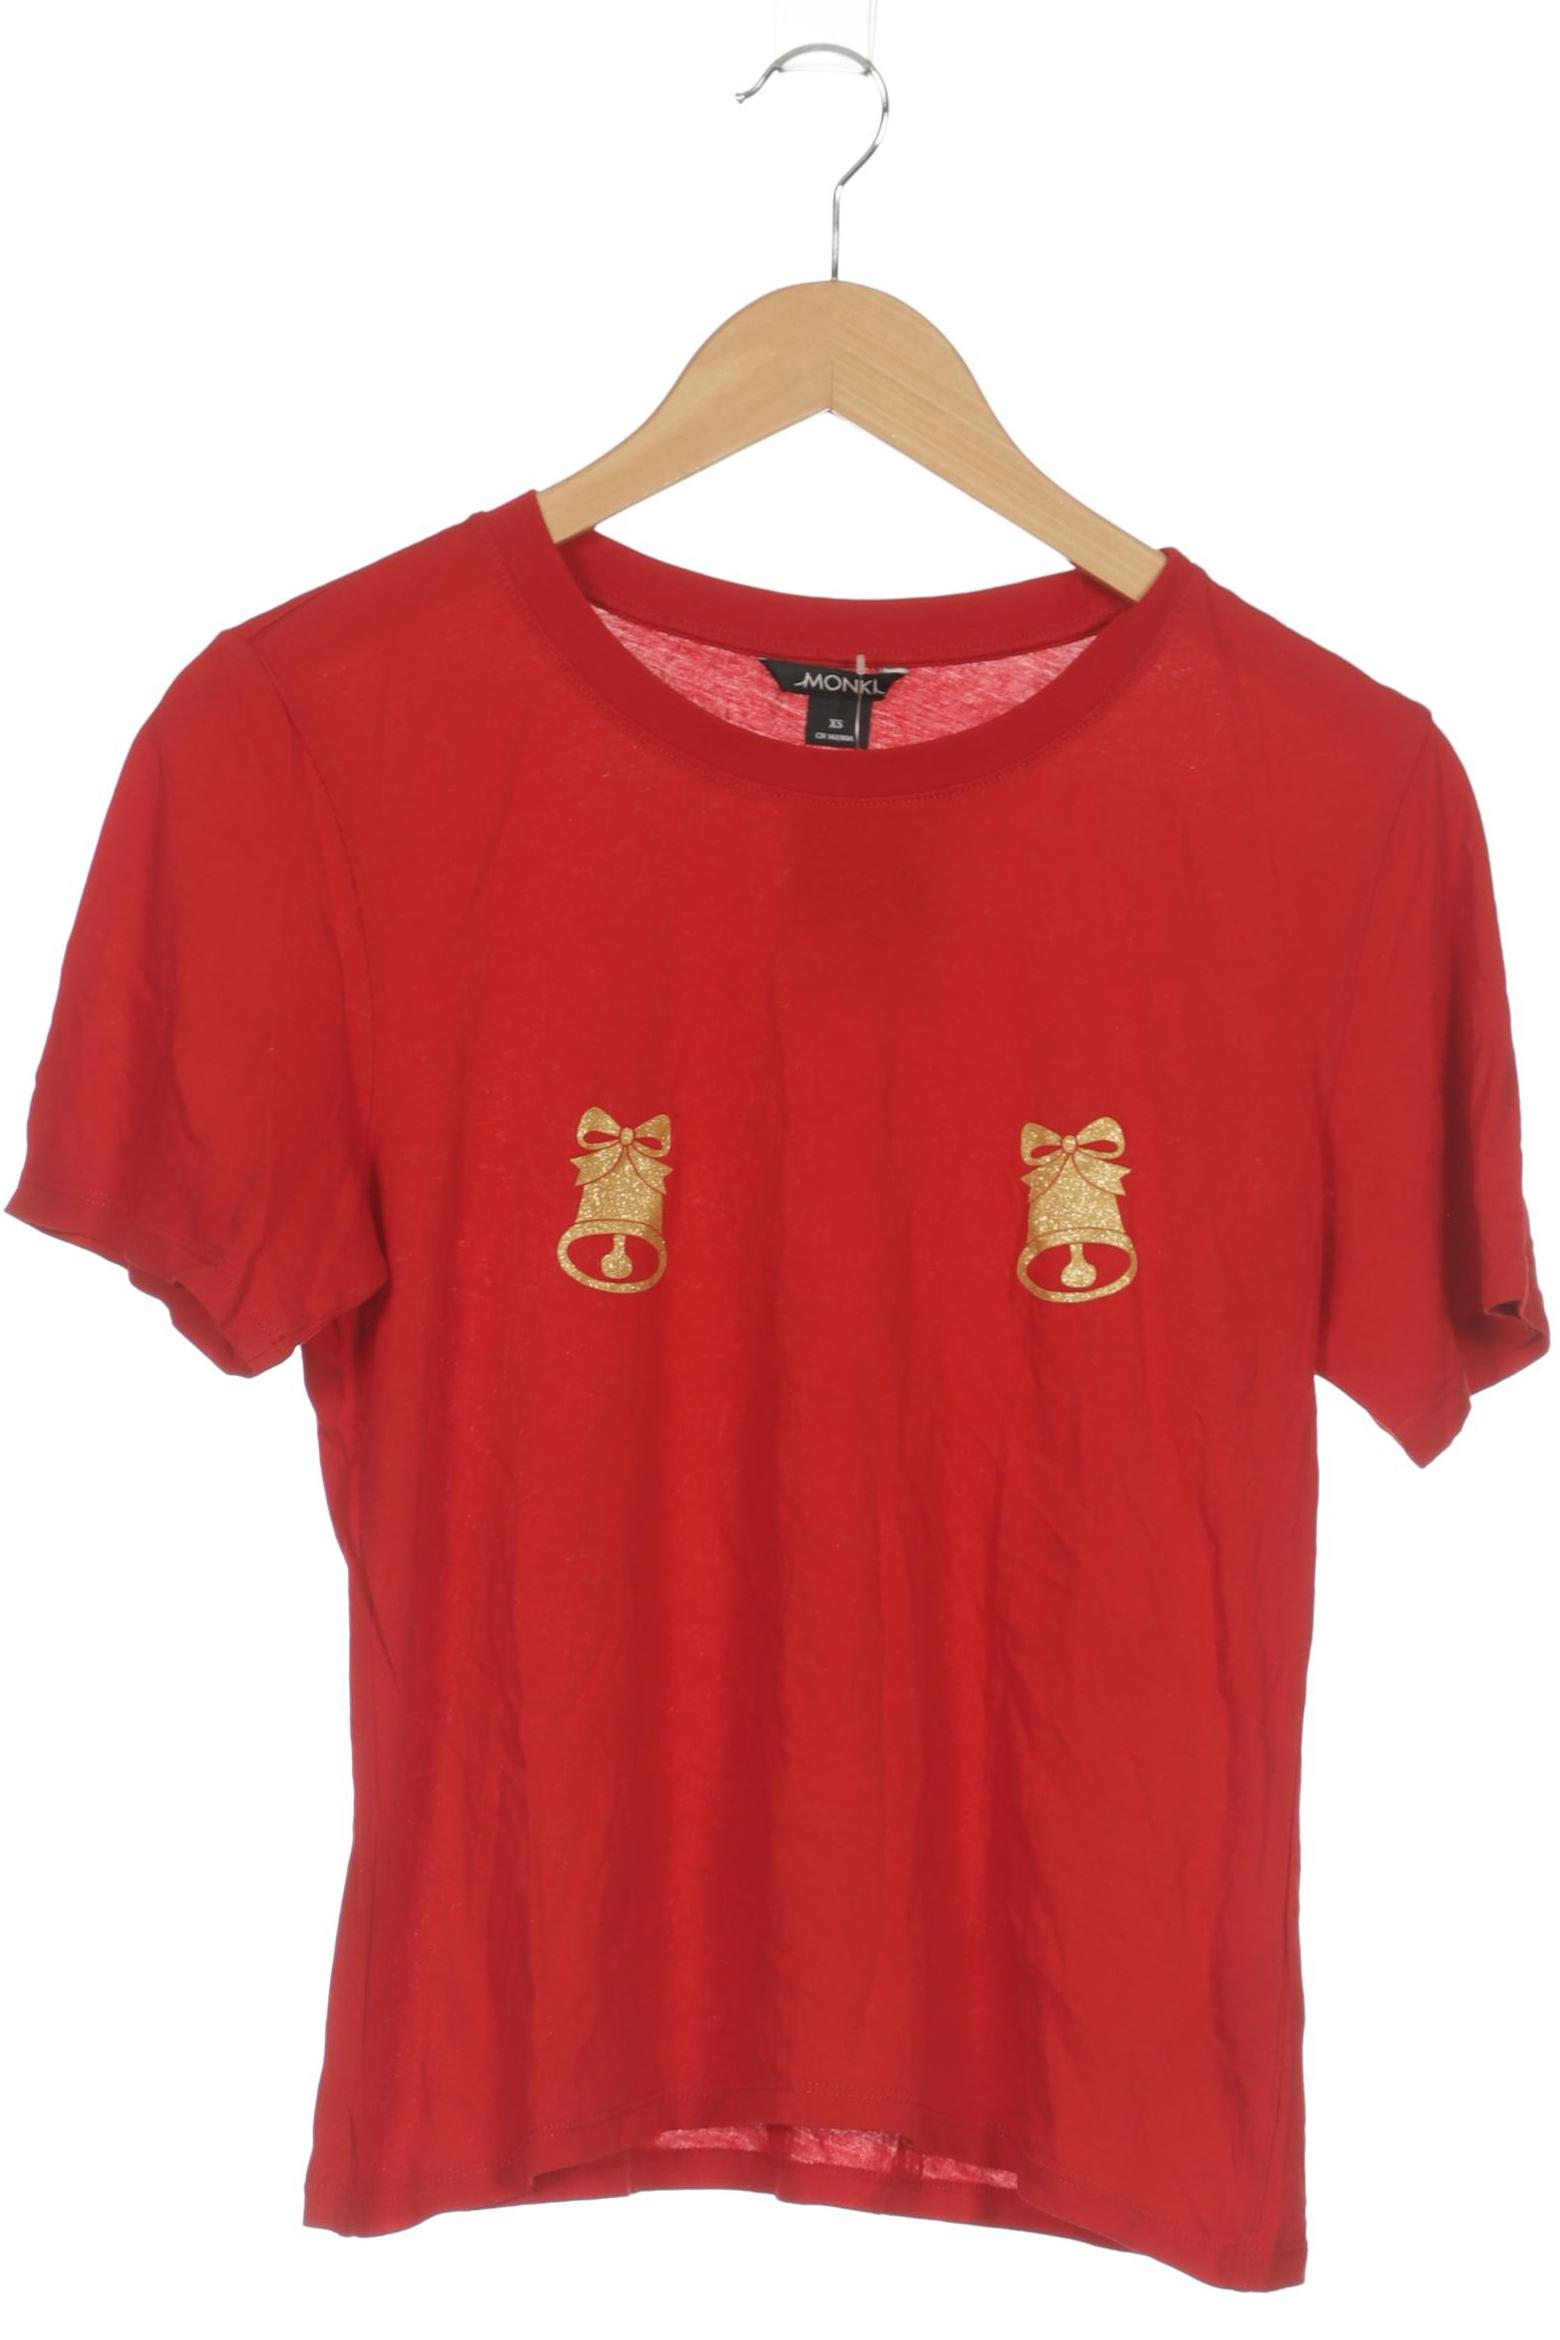 Monki Damen T-Shirt, rot, Gr. 34 von Monki